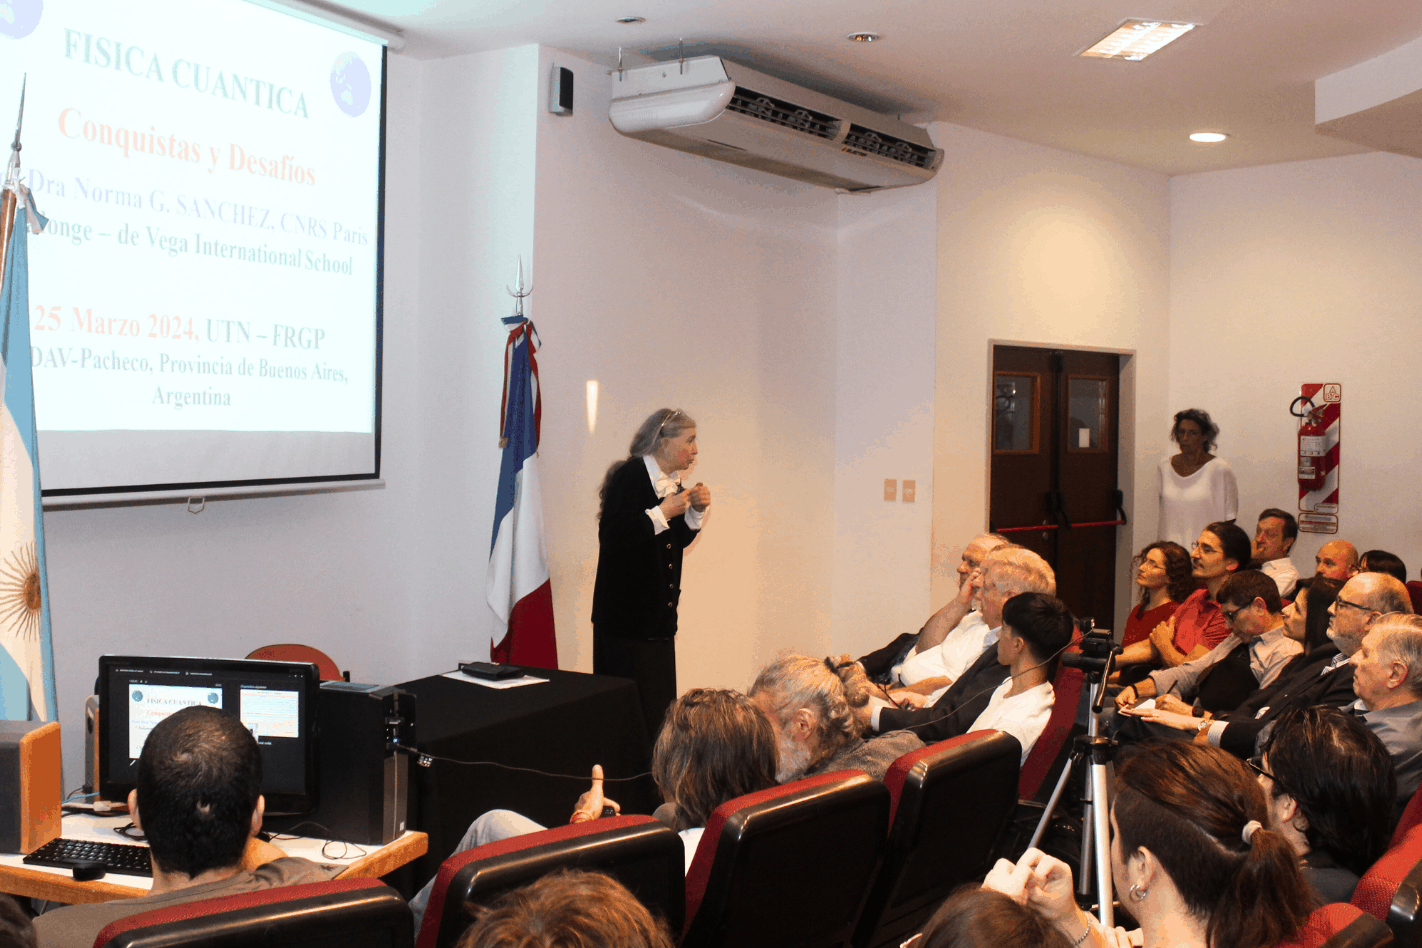 La Dra. Norma Sánchez, pionera en física cuántica, visitó la UTN Pacheco y brindó una conferencia magistral